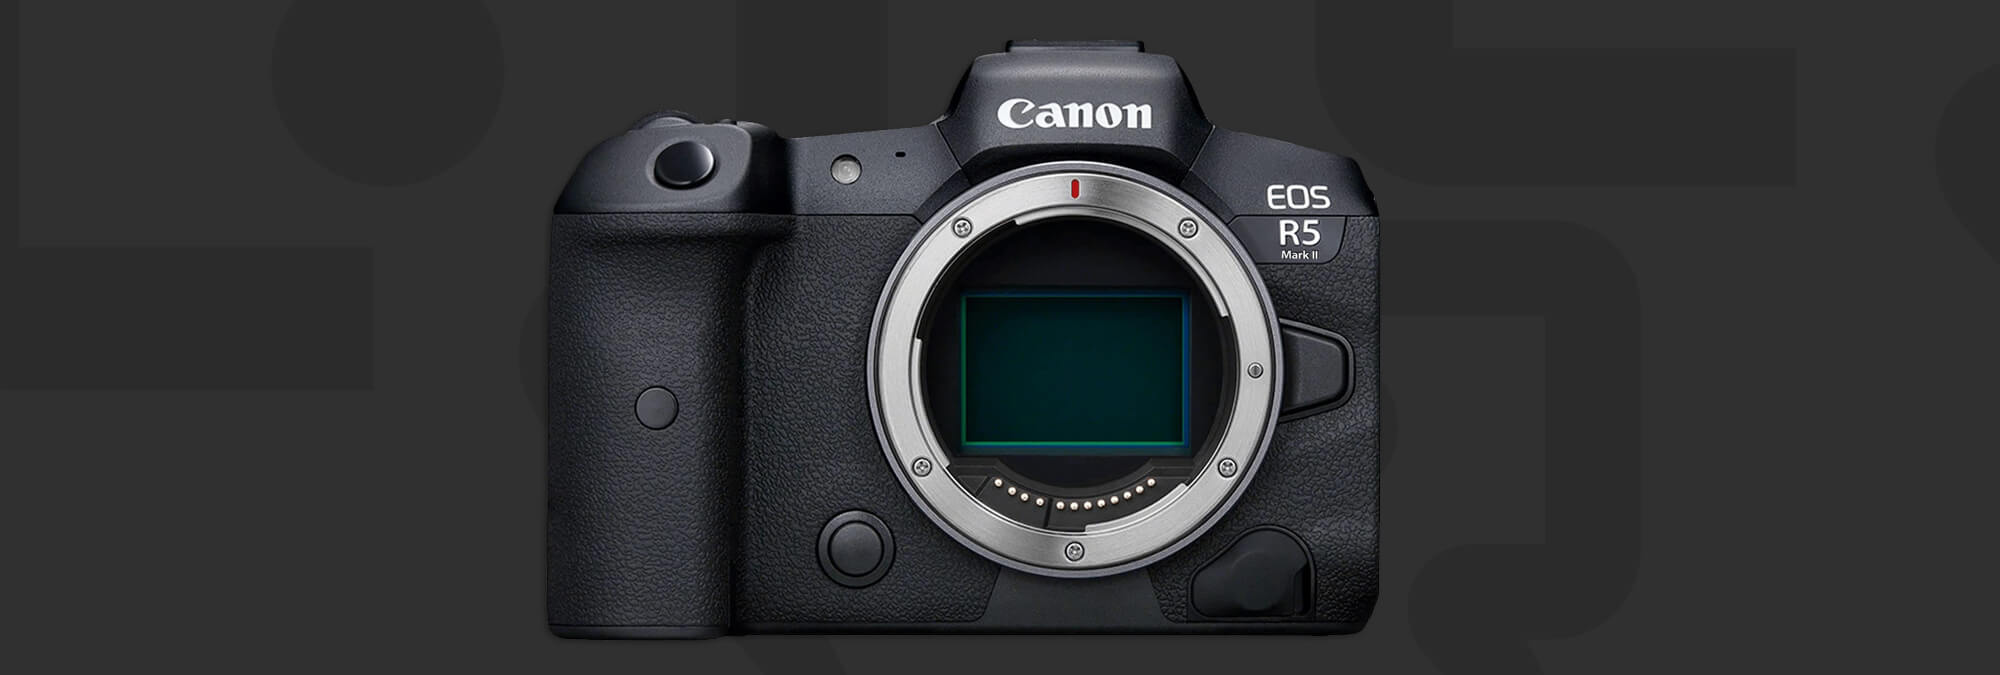 Canon EOS R5 Mark II : ce que nous savons et ce que cela pourrait signifier pour les photographes professionnels